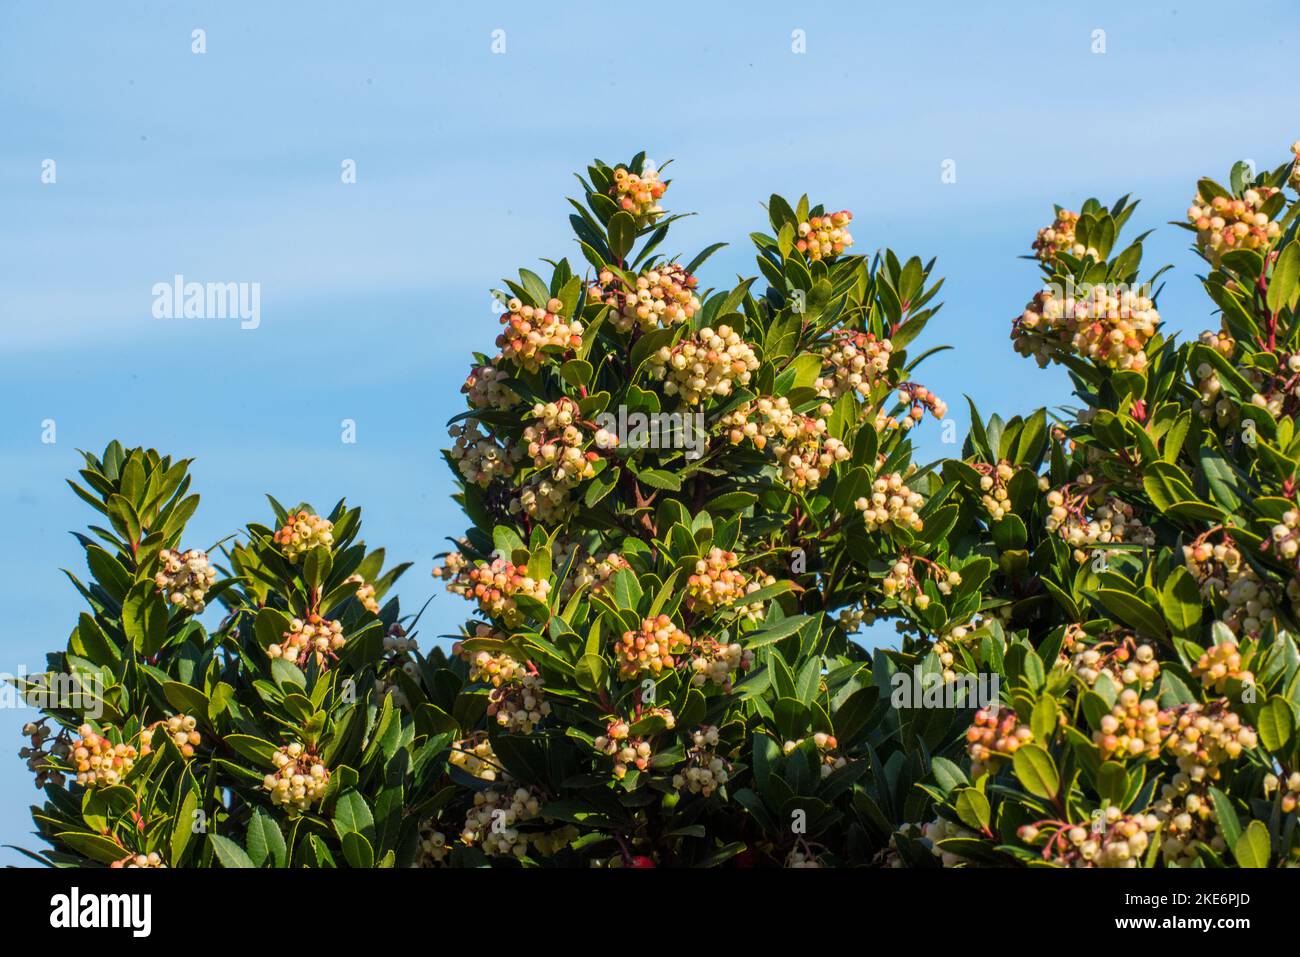 Il corbezzolo, è uno degli arbusti più rappresentativi della Macchia mediterranea. Dai suoi frutti, si ottiene un'ottima marmellata. Stockfoto